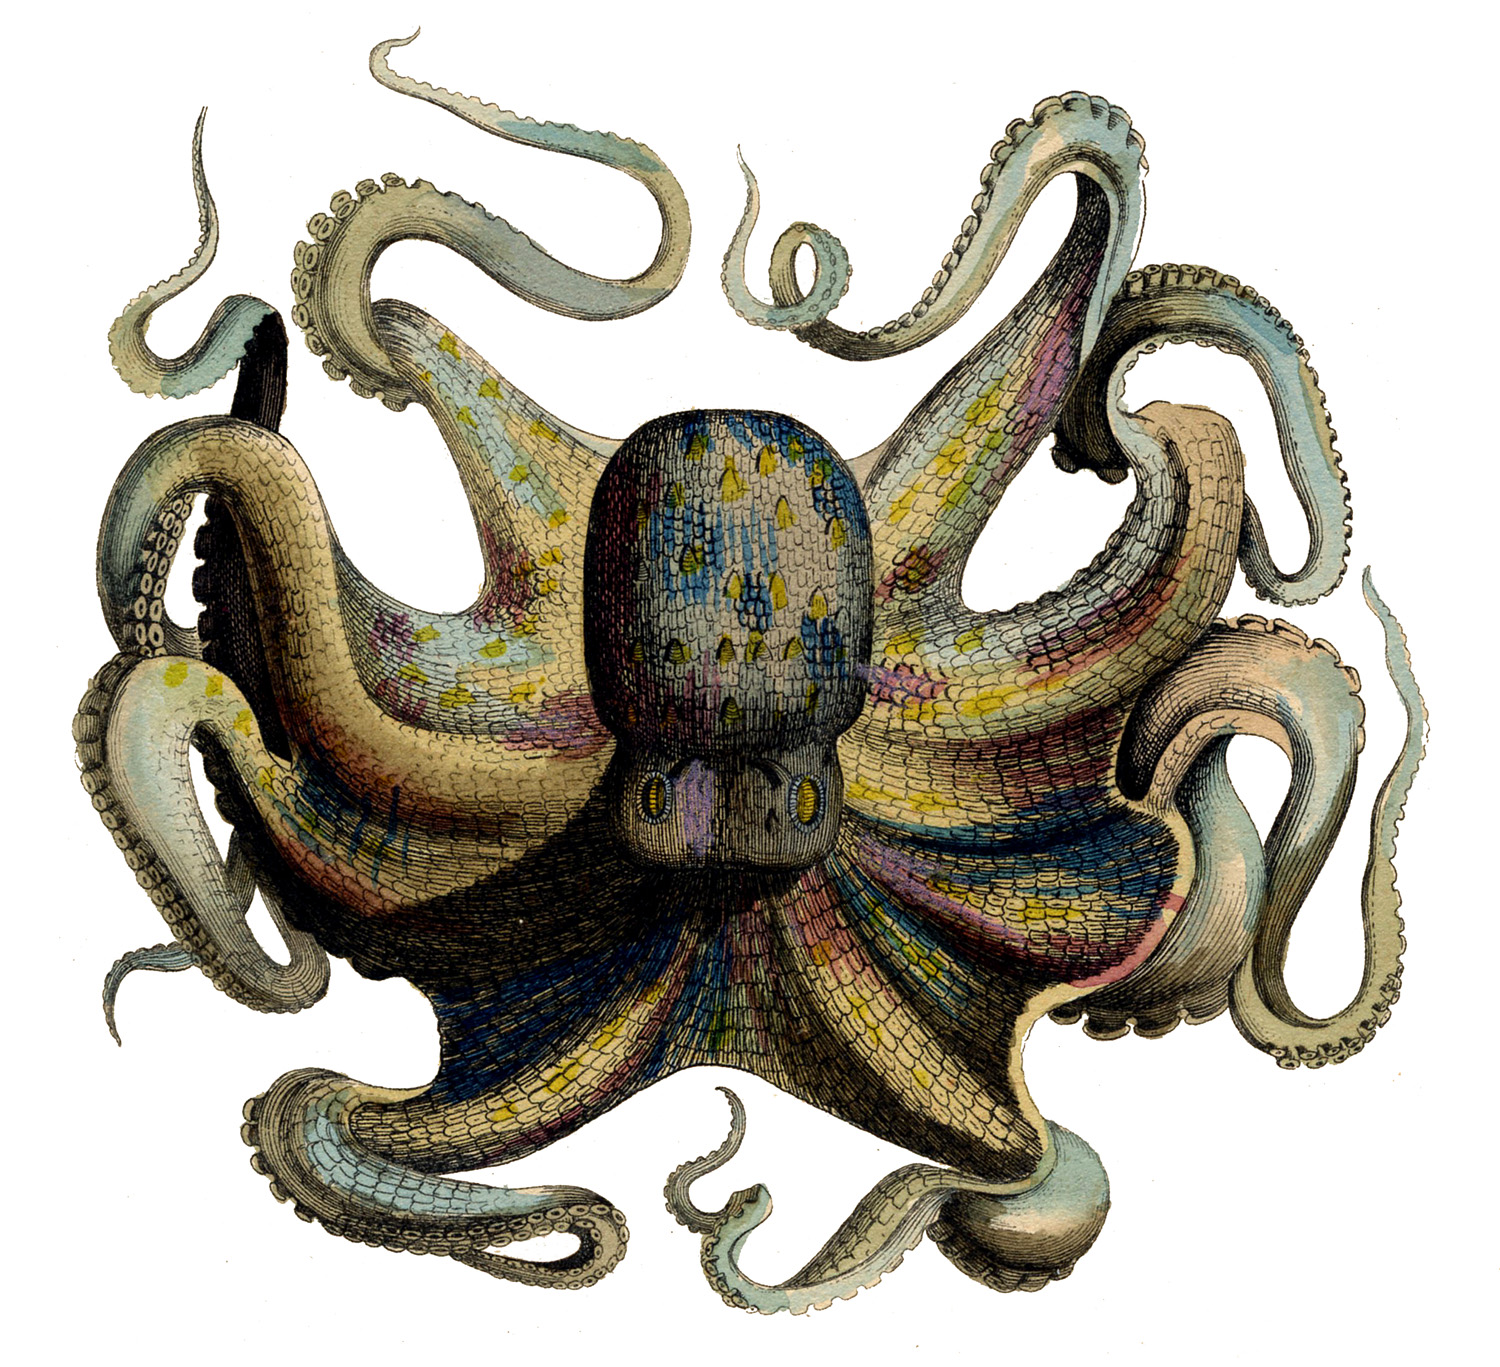  clip art images. Clipart octopus vintage